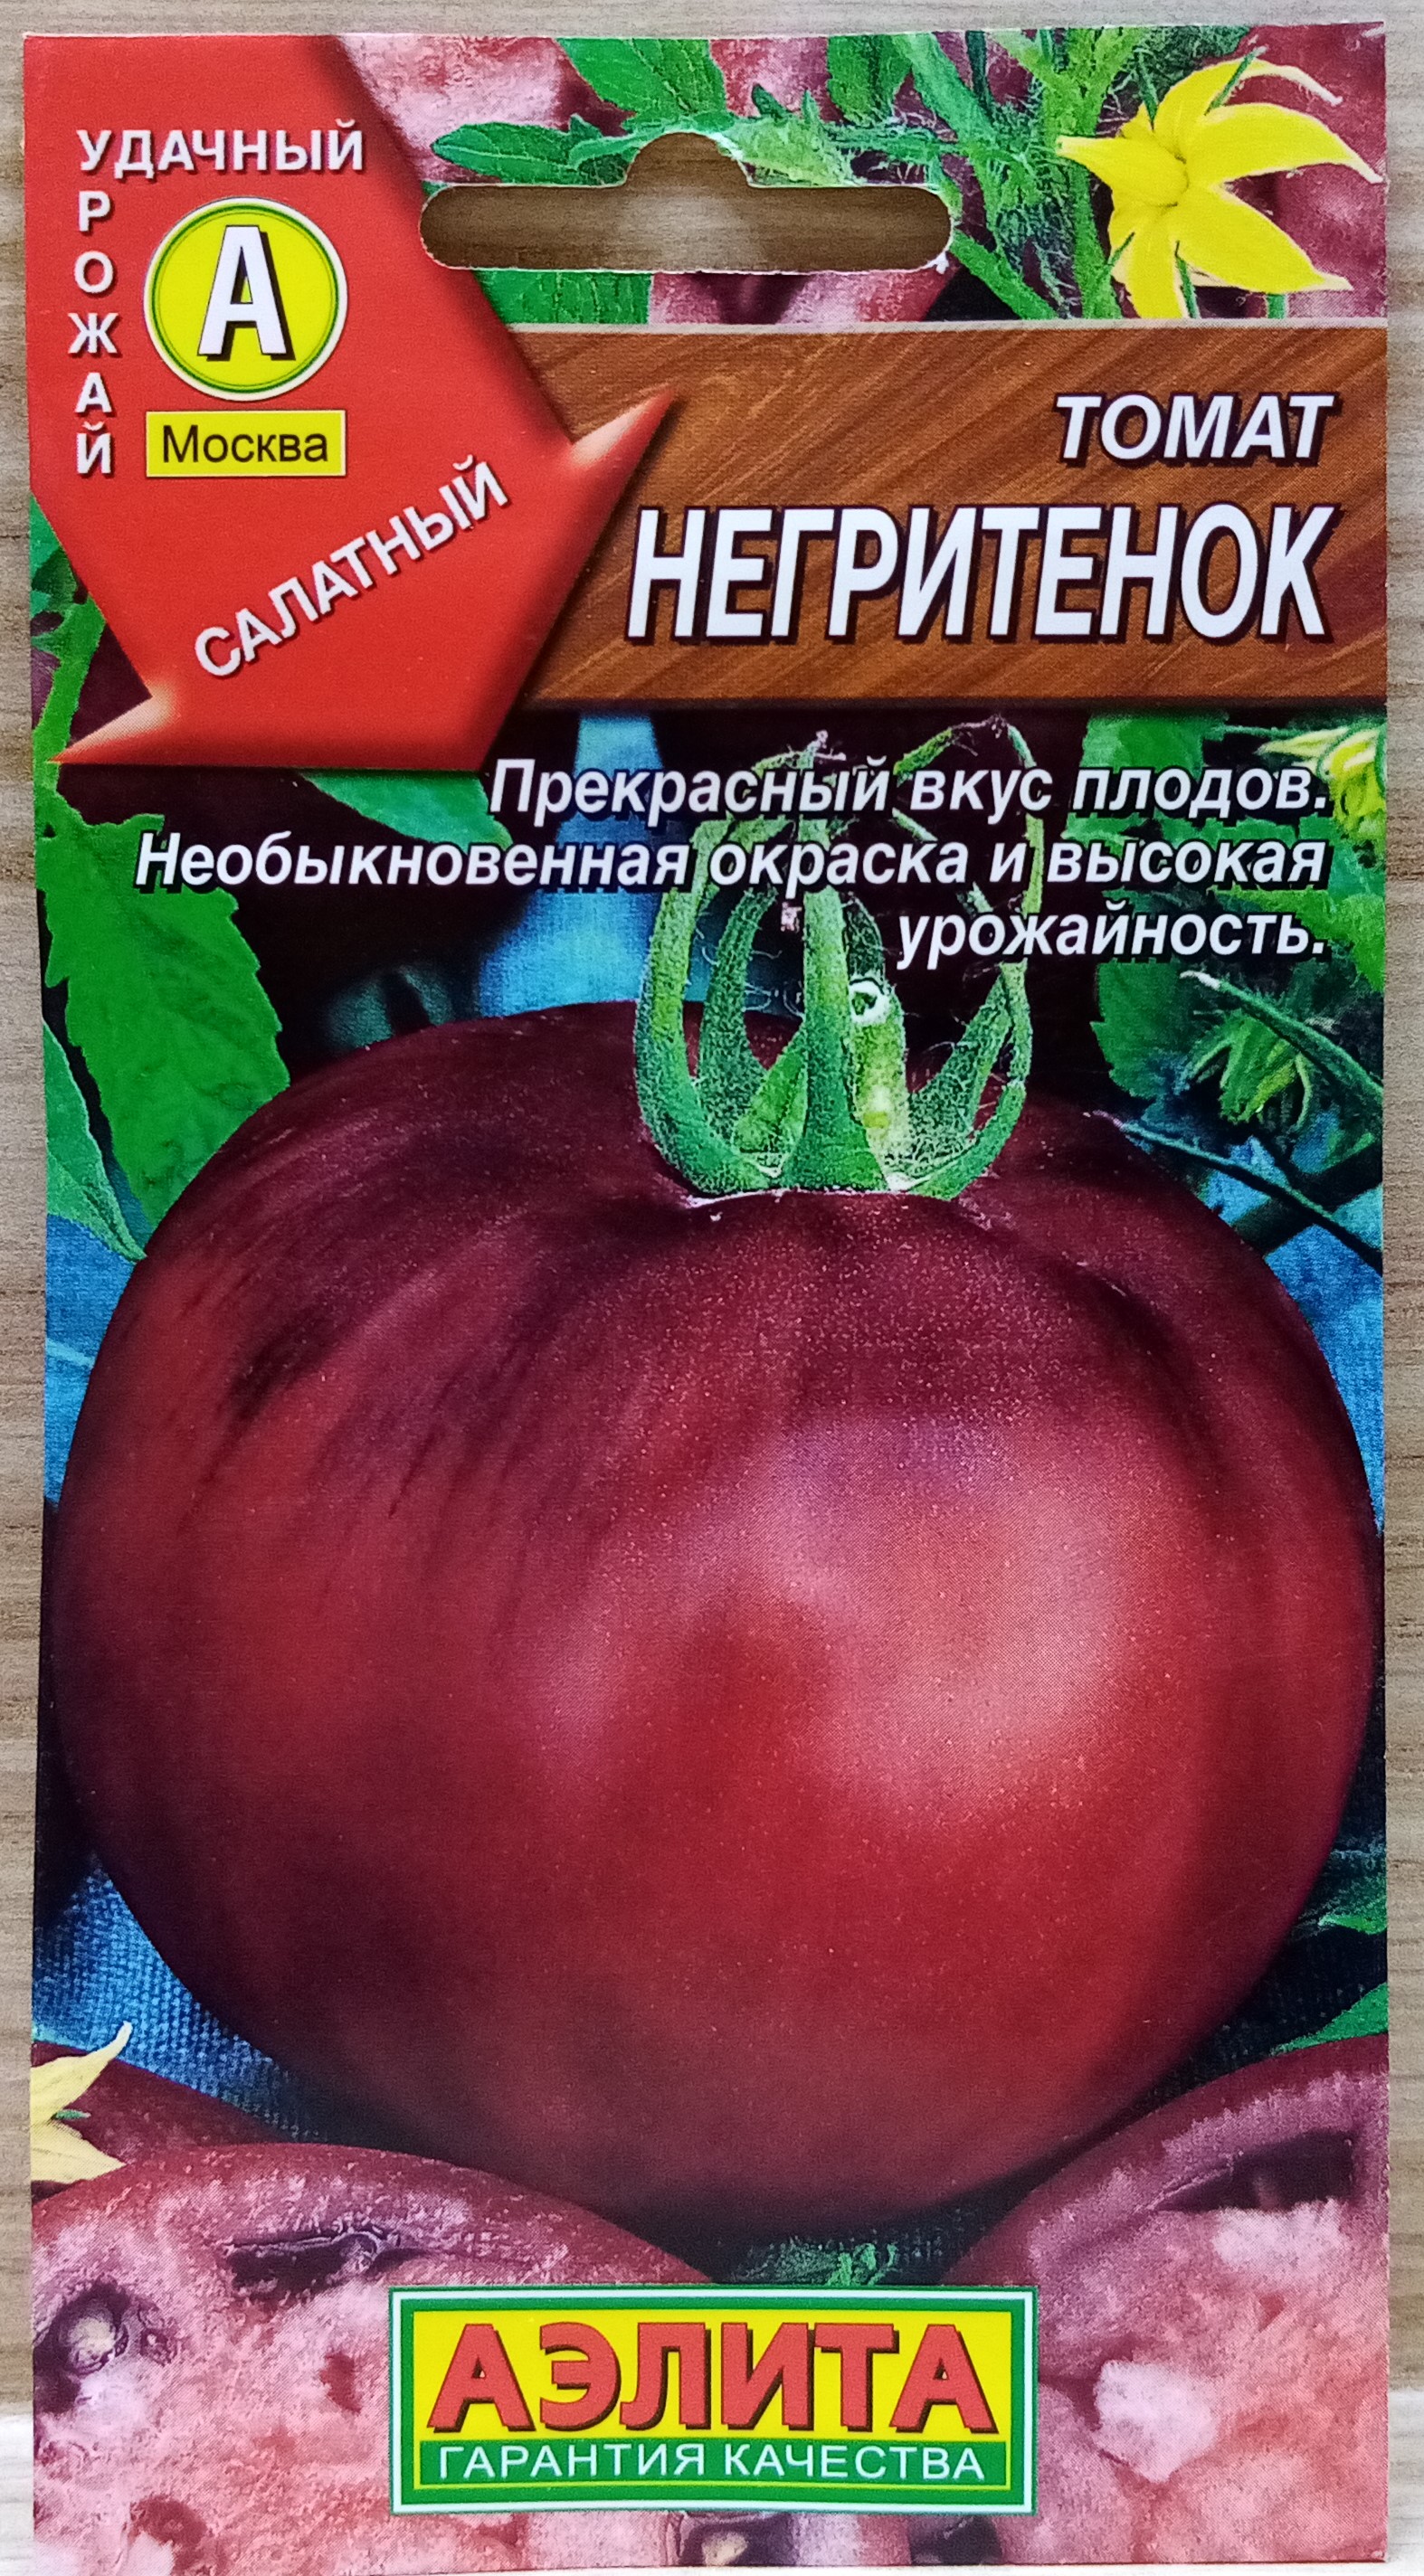 Томат негритенок: характеристика и описание сорта, фото кустов и готовых помидоров, сферы применения урожая